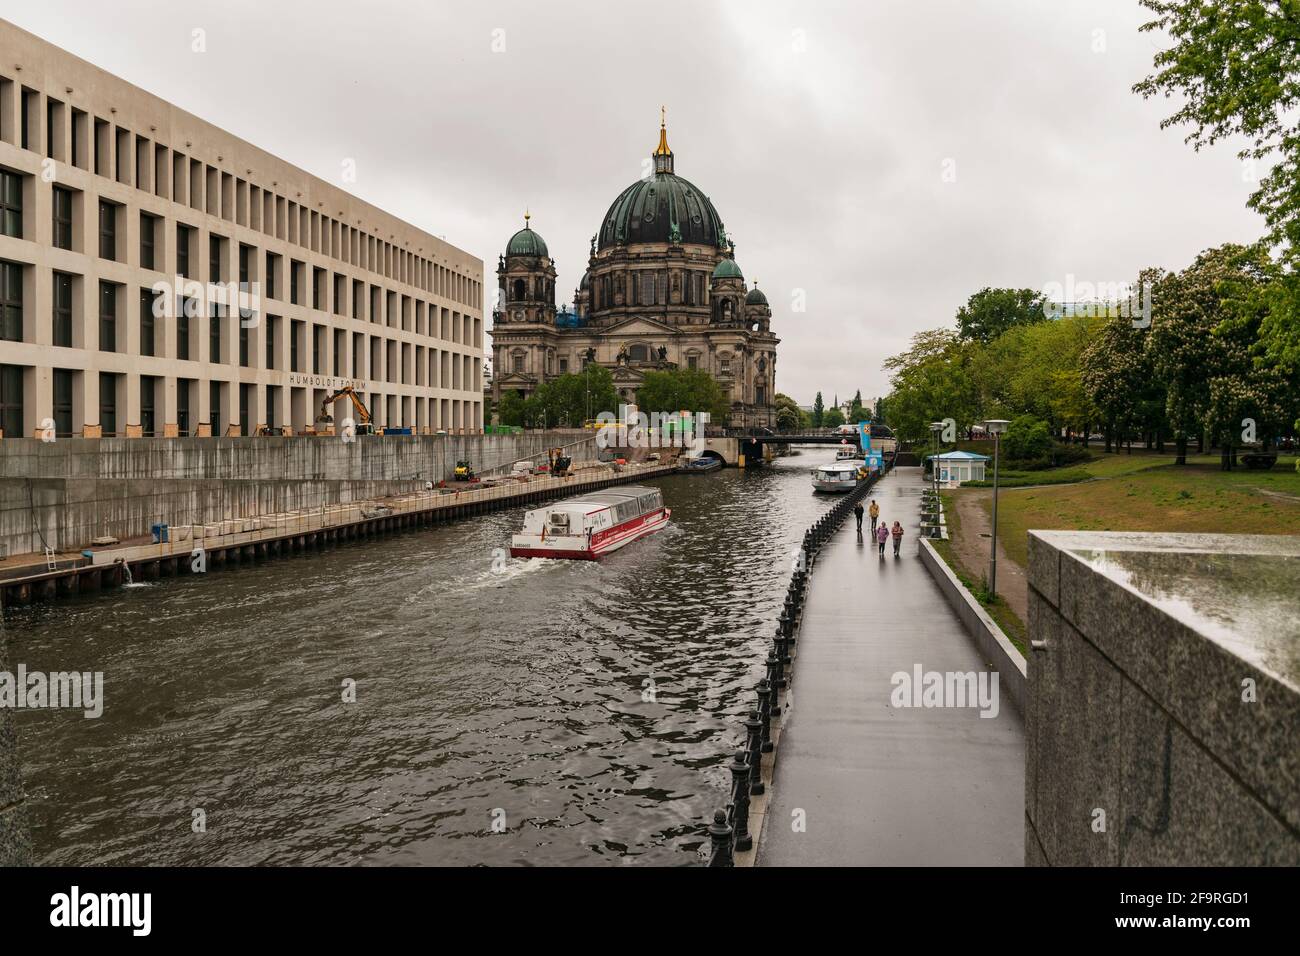 13 maggio 2019 Berlino, Germania - splendida vista della storica Cattedrale di Berlino (Berliner Dom) presso il famoso Museumsinsel (Isola dei Musei) con barca da escursione Foto Stock